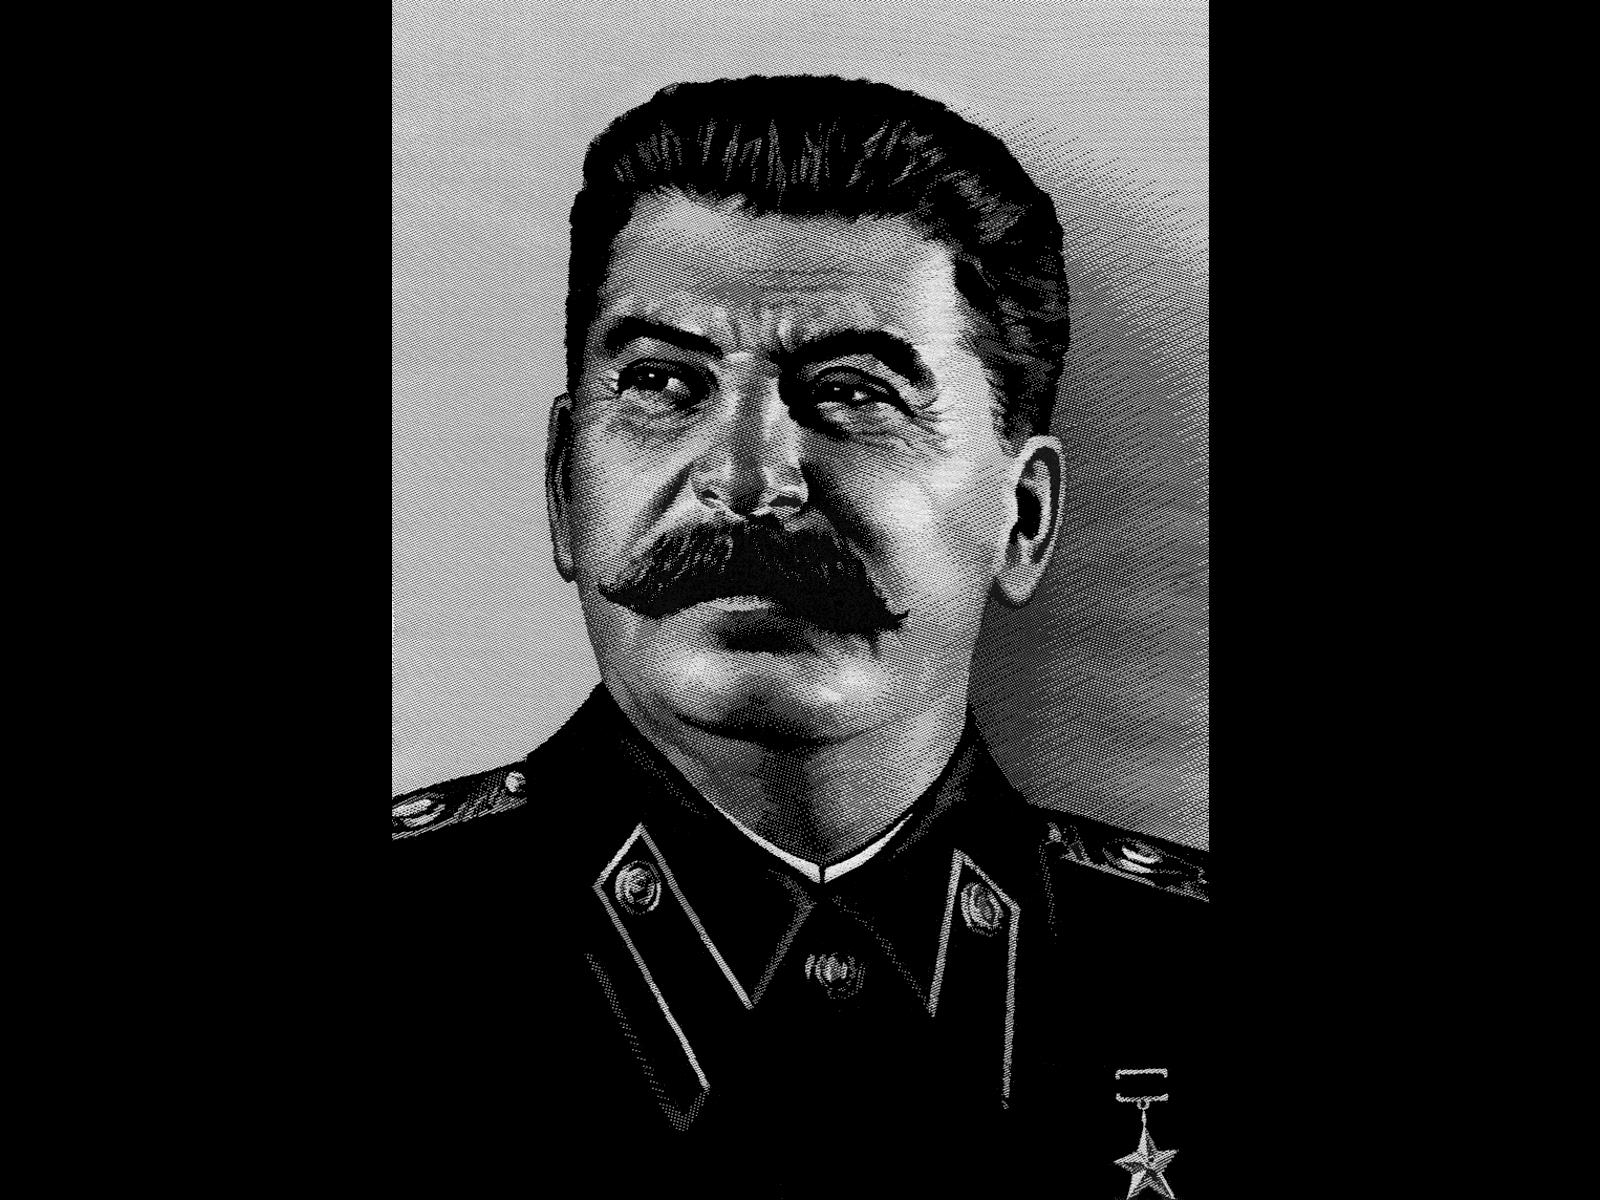 Joseph Stalin , HD Wallpaper & Backgrounds